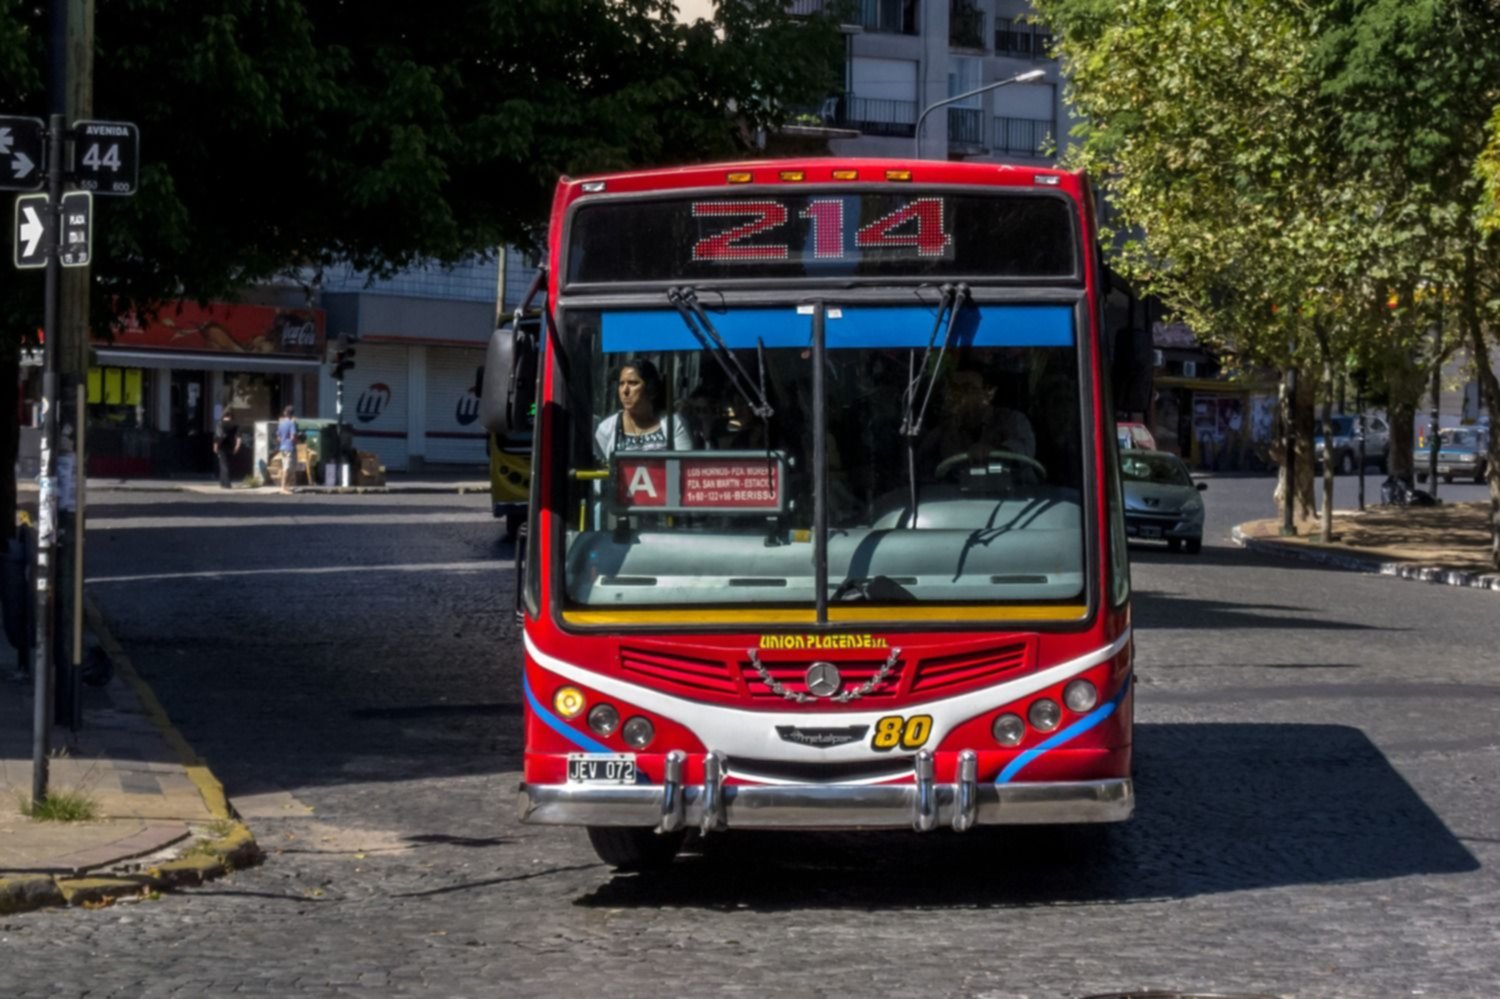 La empresa Unión Platense anunció que dos ramales de la línea 214 cambiarán de recorrido